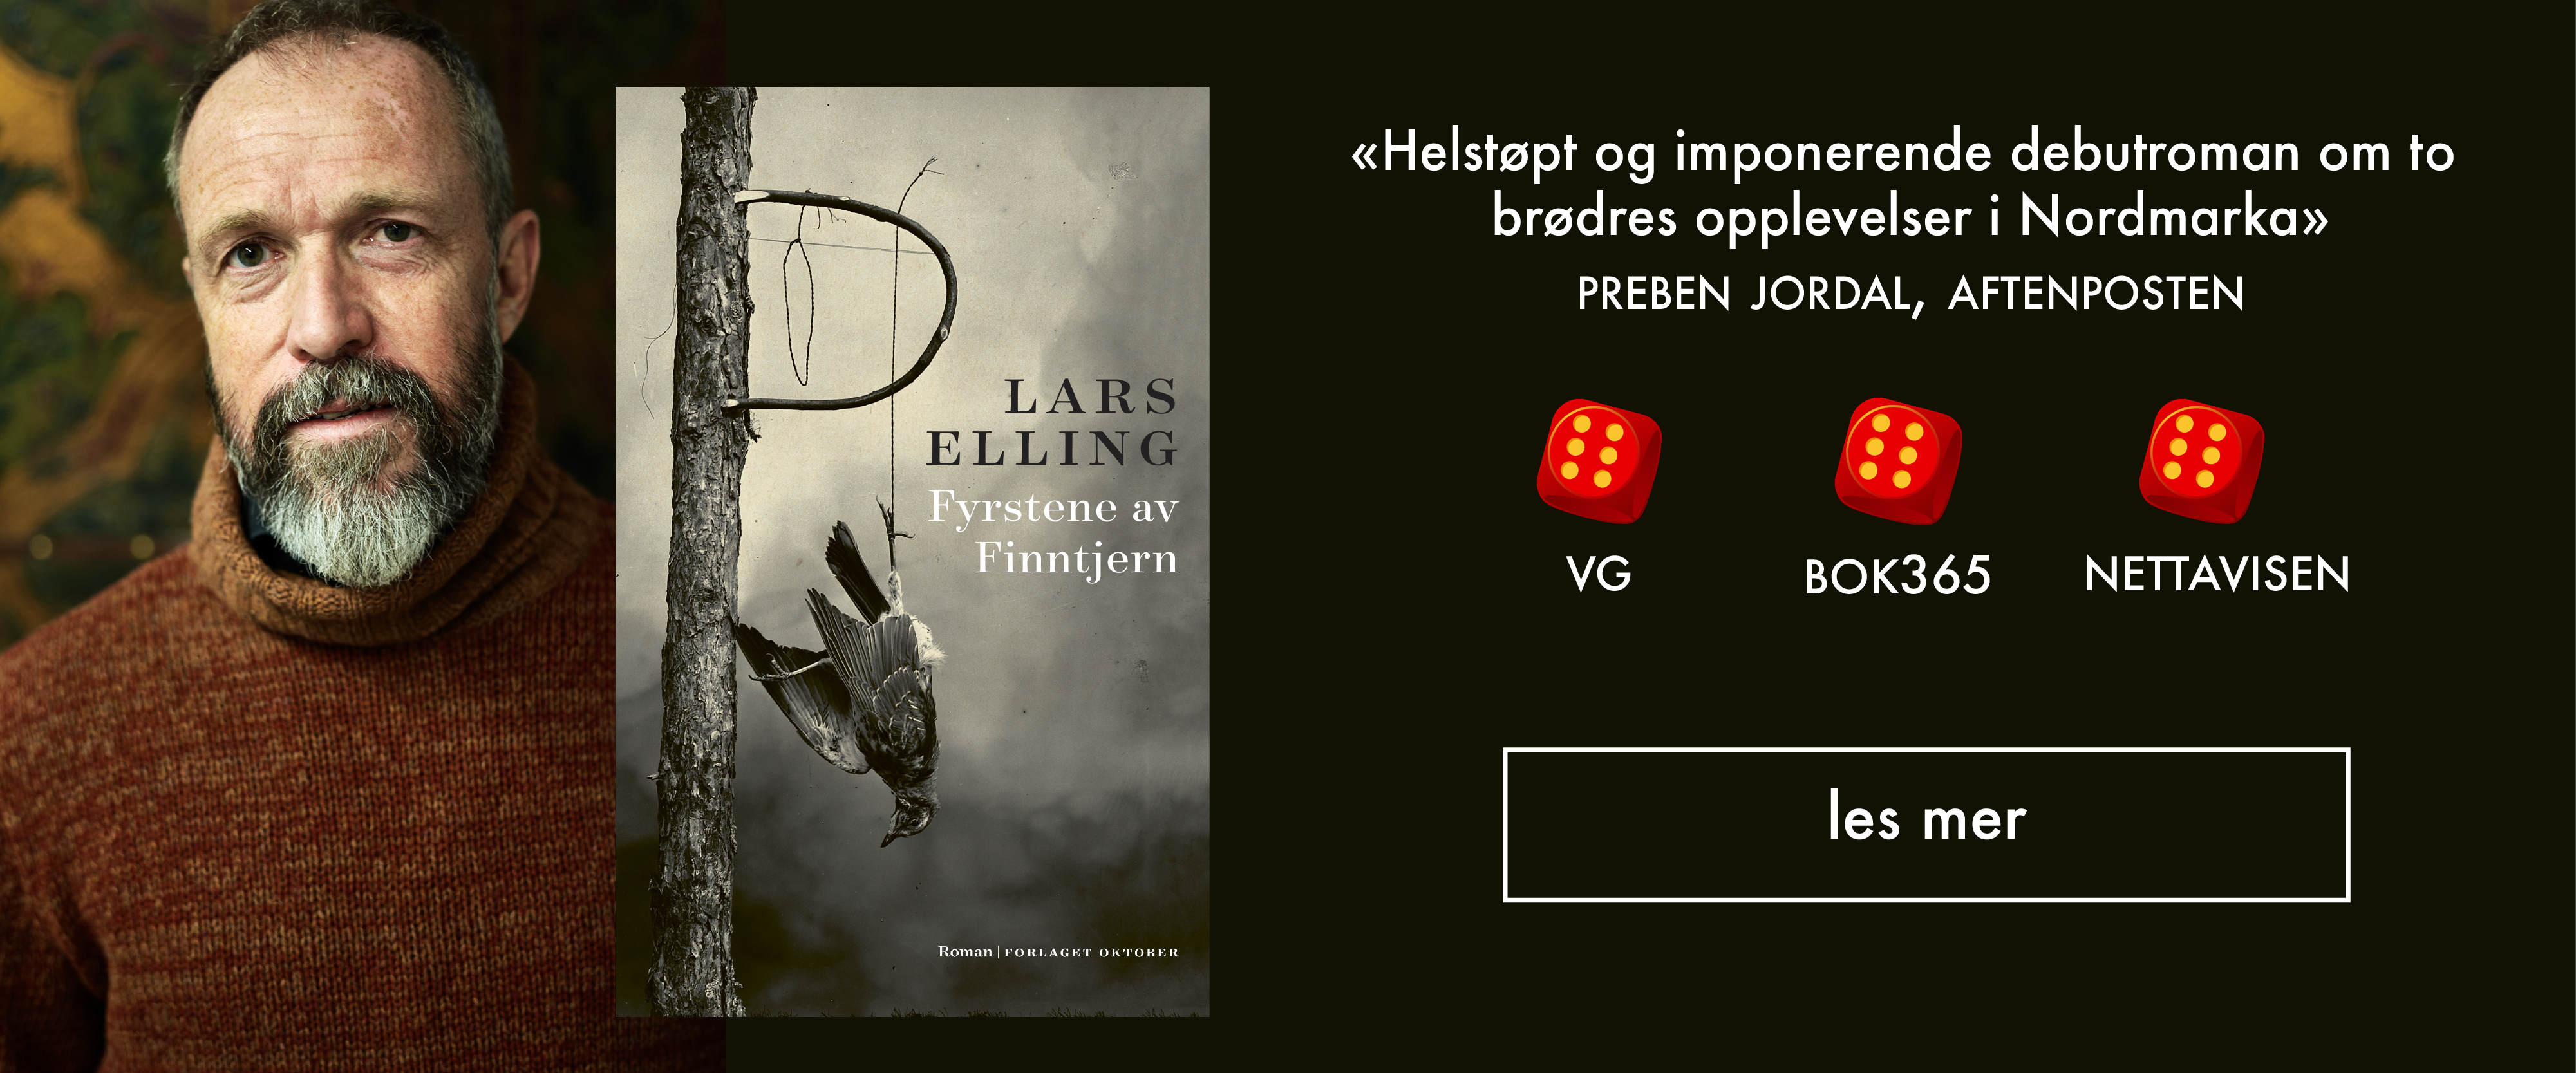 Lars Elling - Fyrstene av Finntjern